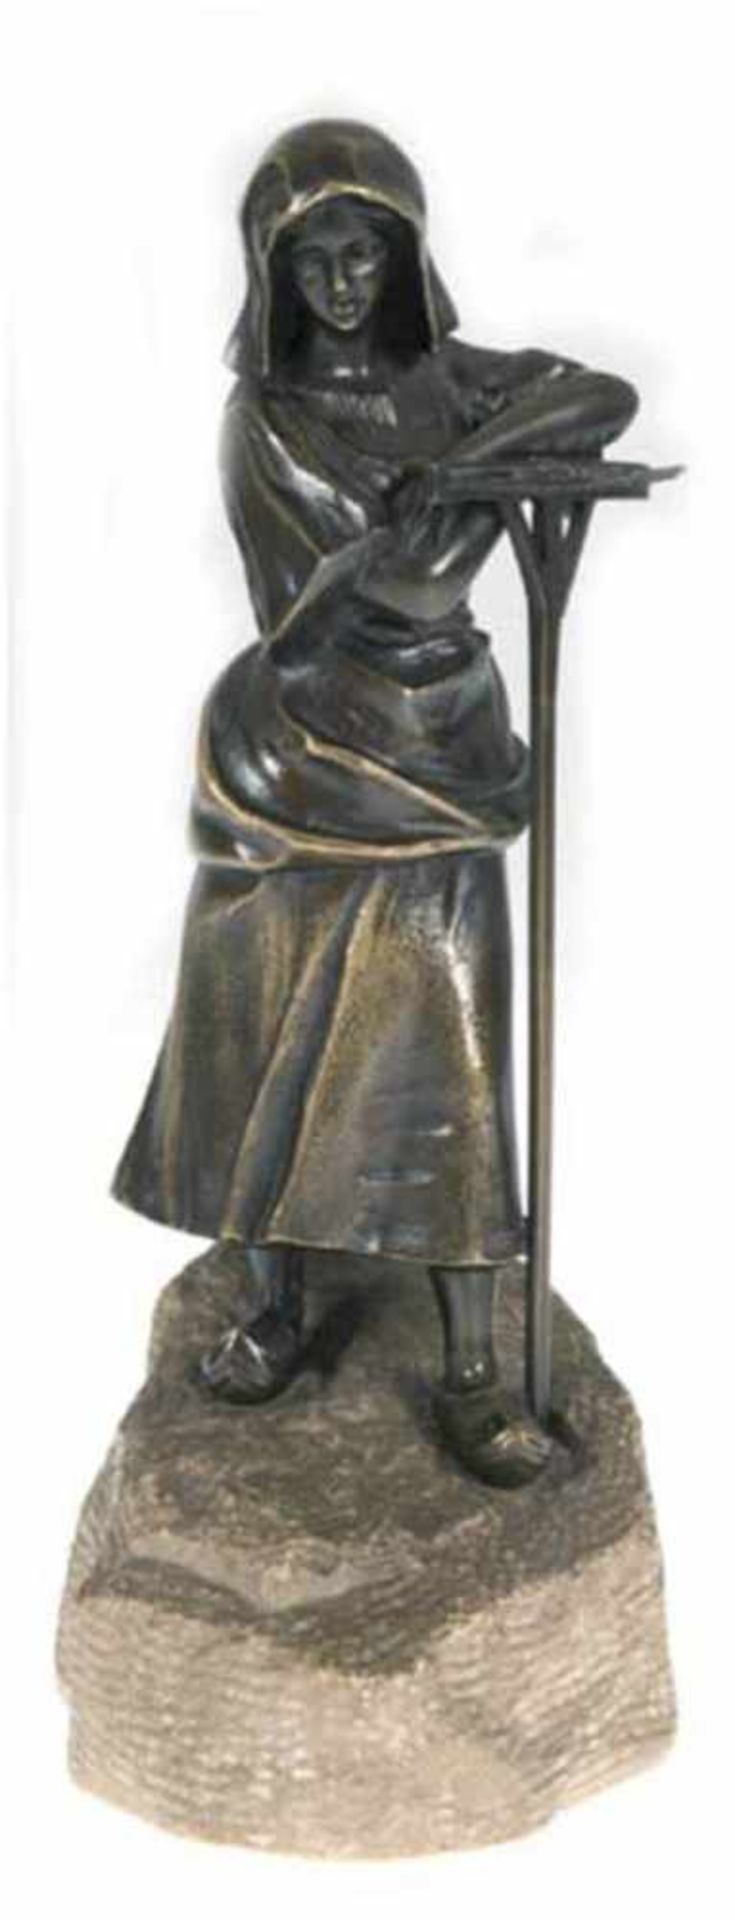 Titze, A. (um 1920, tätig in Wien) "Landarbeiterin mit Harke in Holzpantinen", Bronze, dunkel